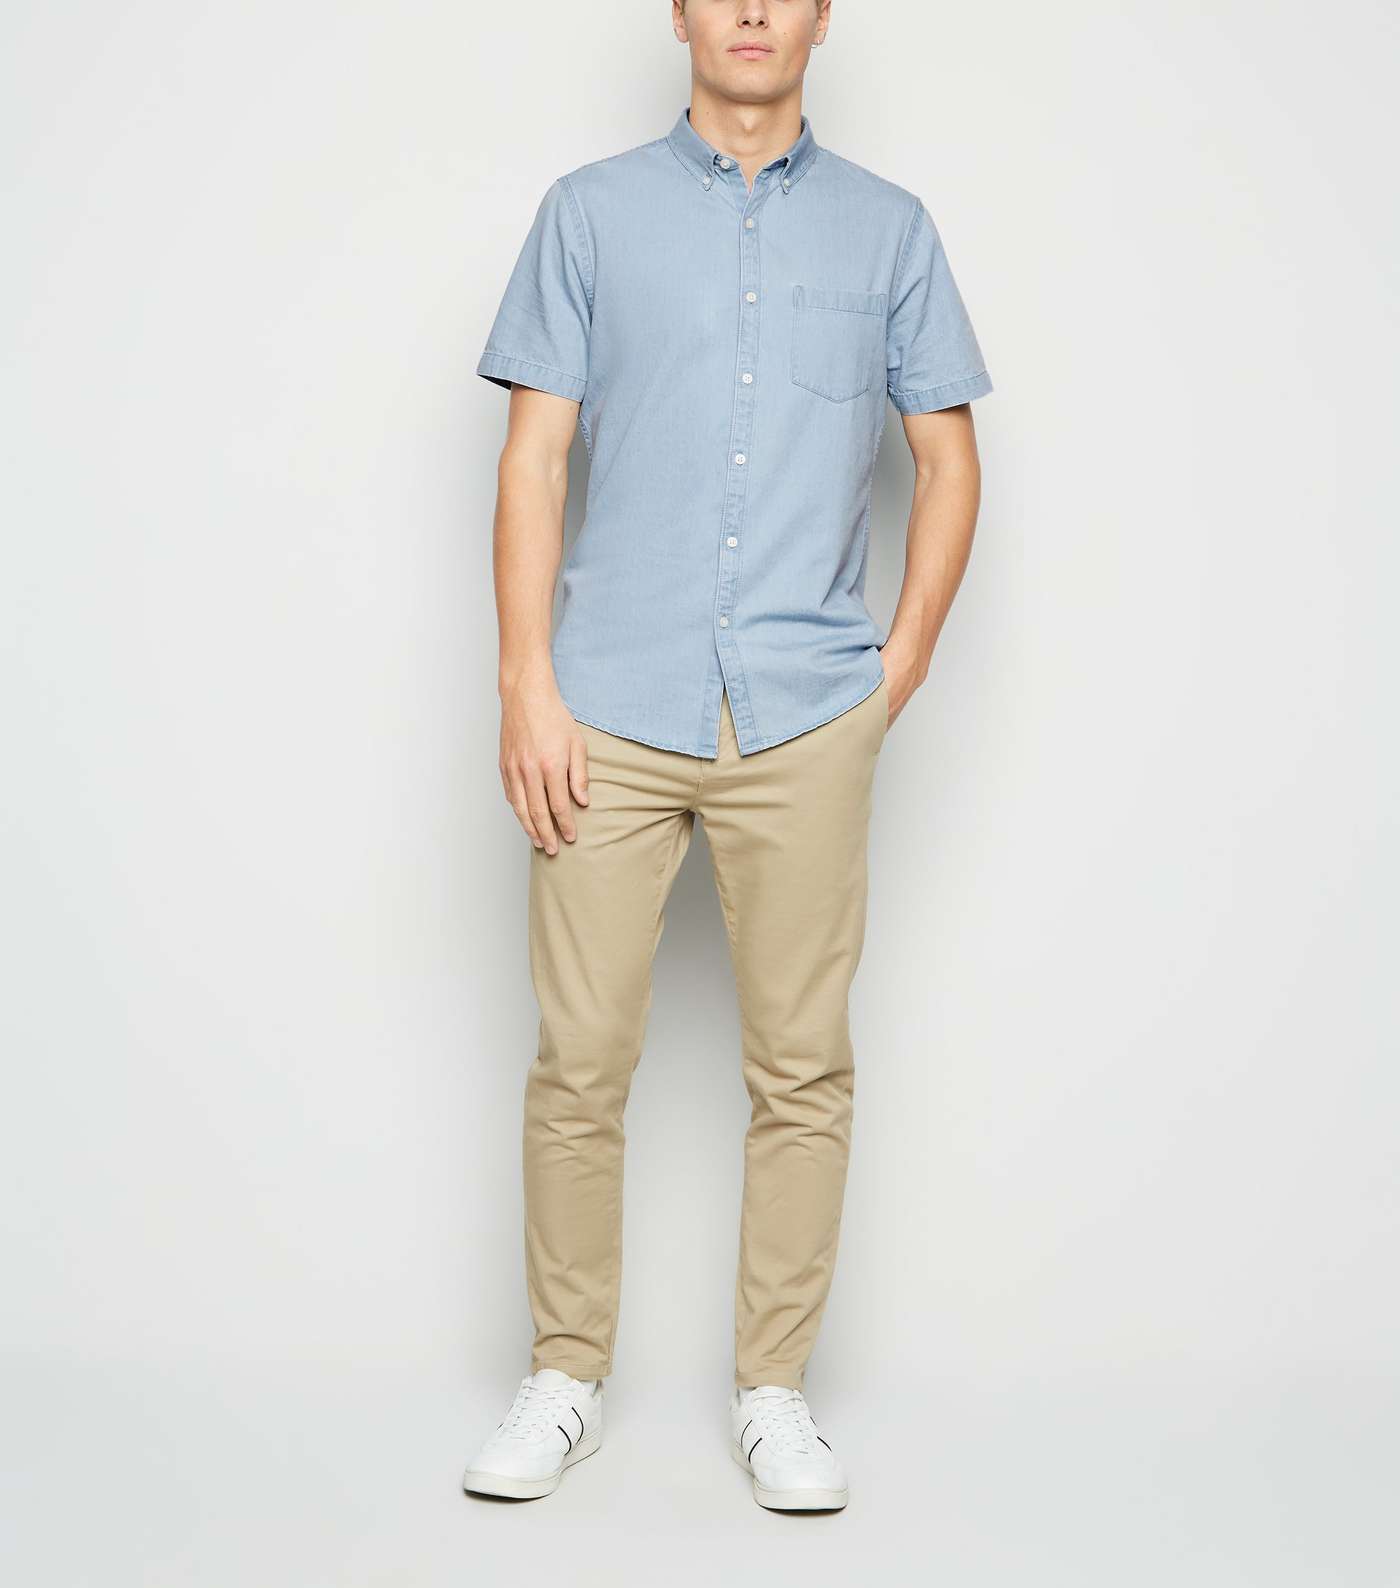 Pale Blue Short Sleeve Denim Shirt Image 2